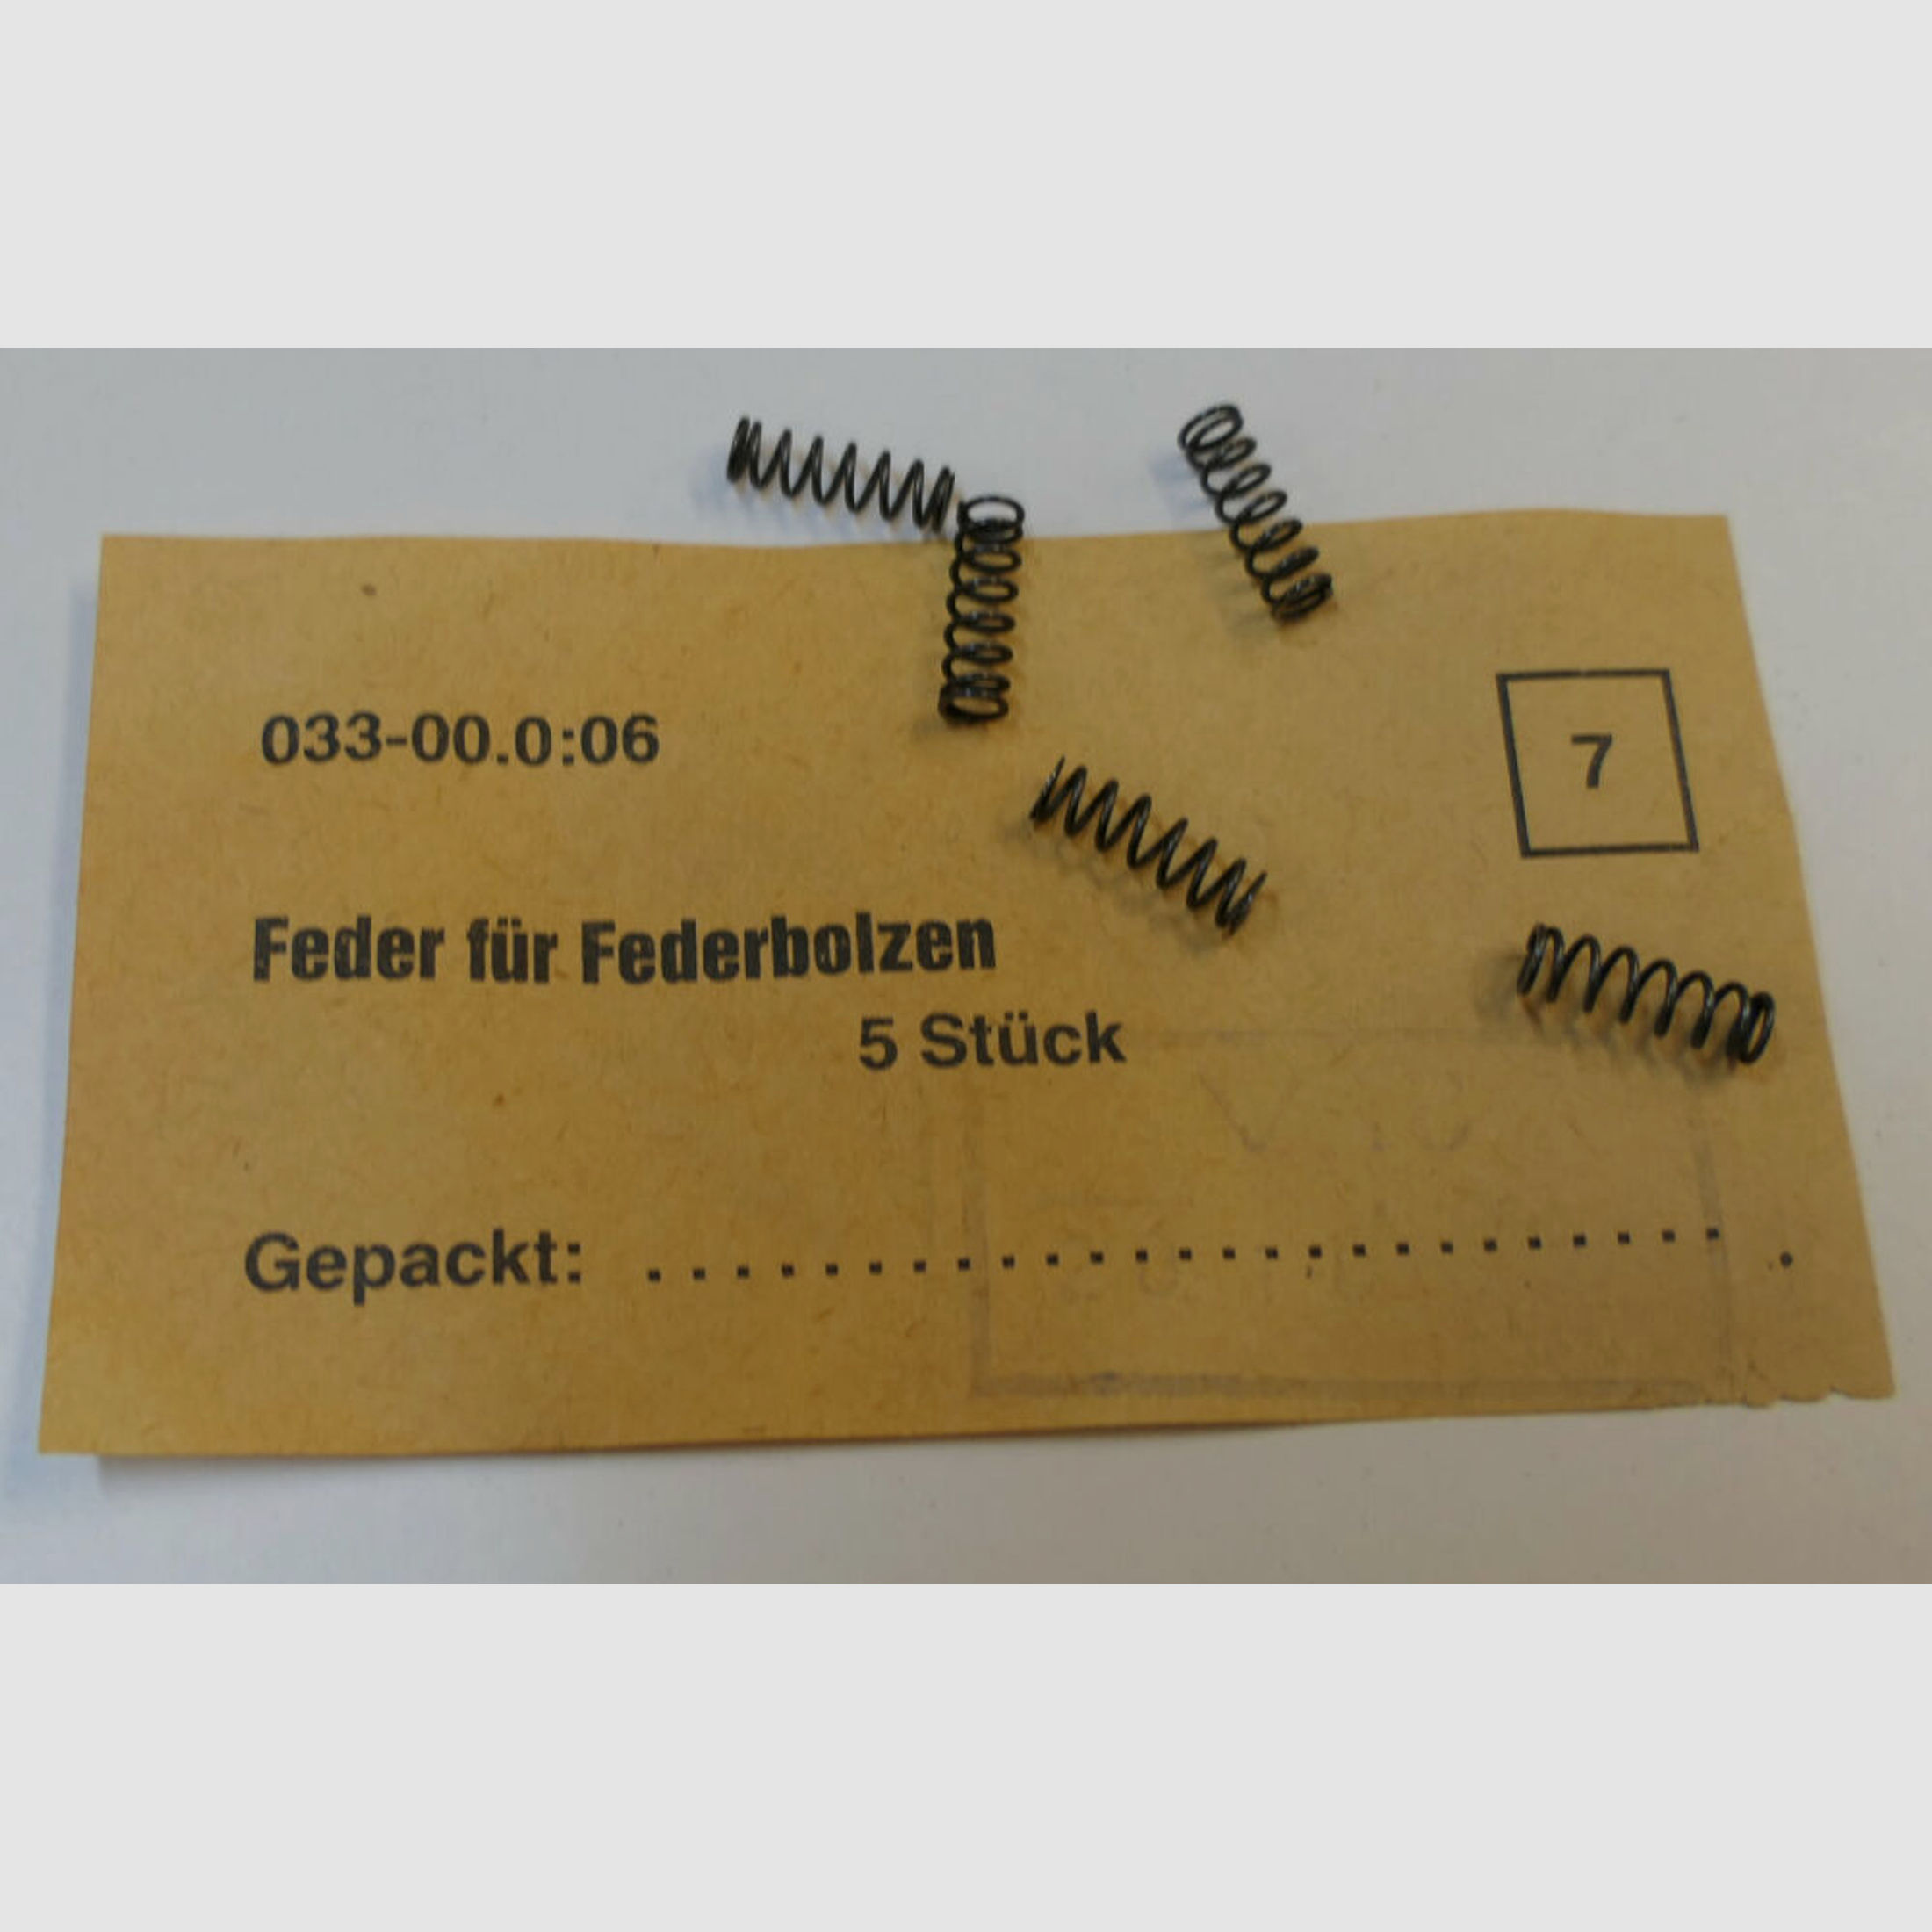 DDR VEB Geräte-& Werkzeugbau Wiesa	 orginal DDR NVA AK 47 Feder für Federbolzen [ 7 ] unbenutzt, neu für AK47, 7,62x39